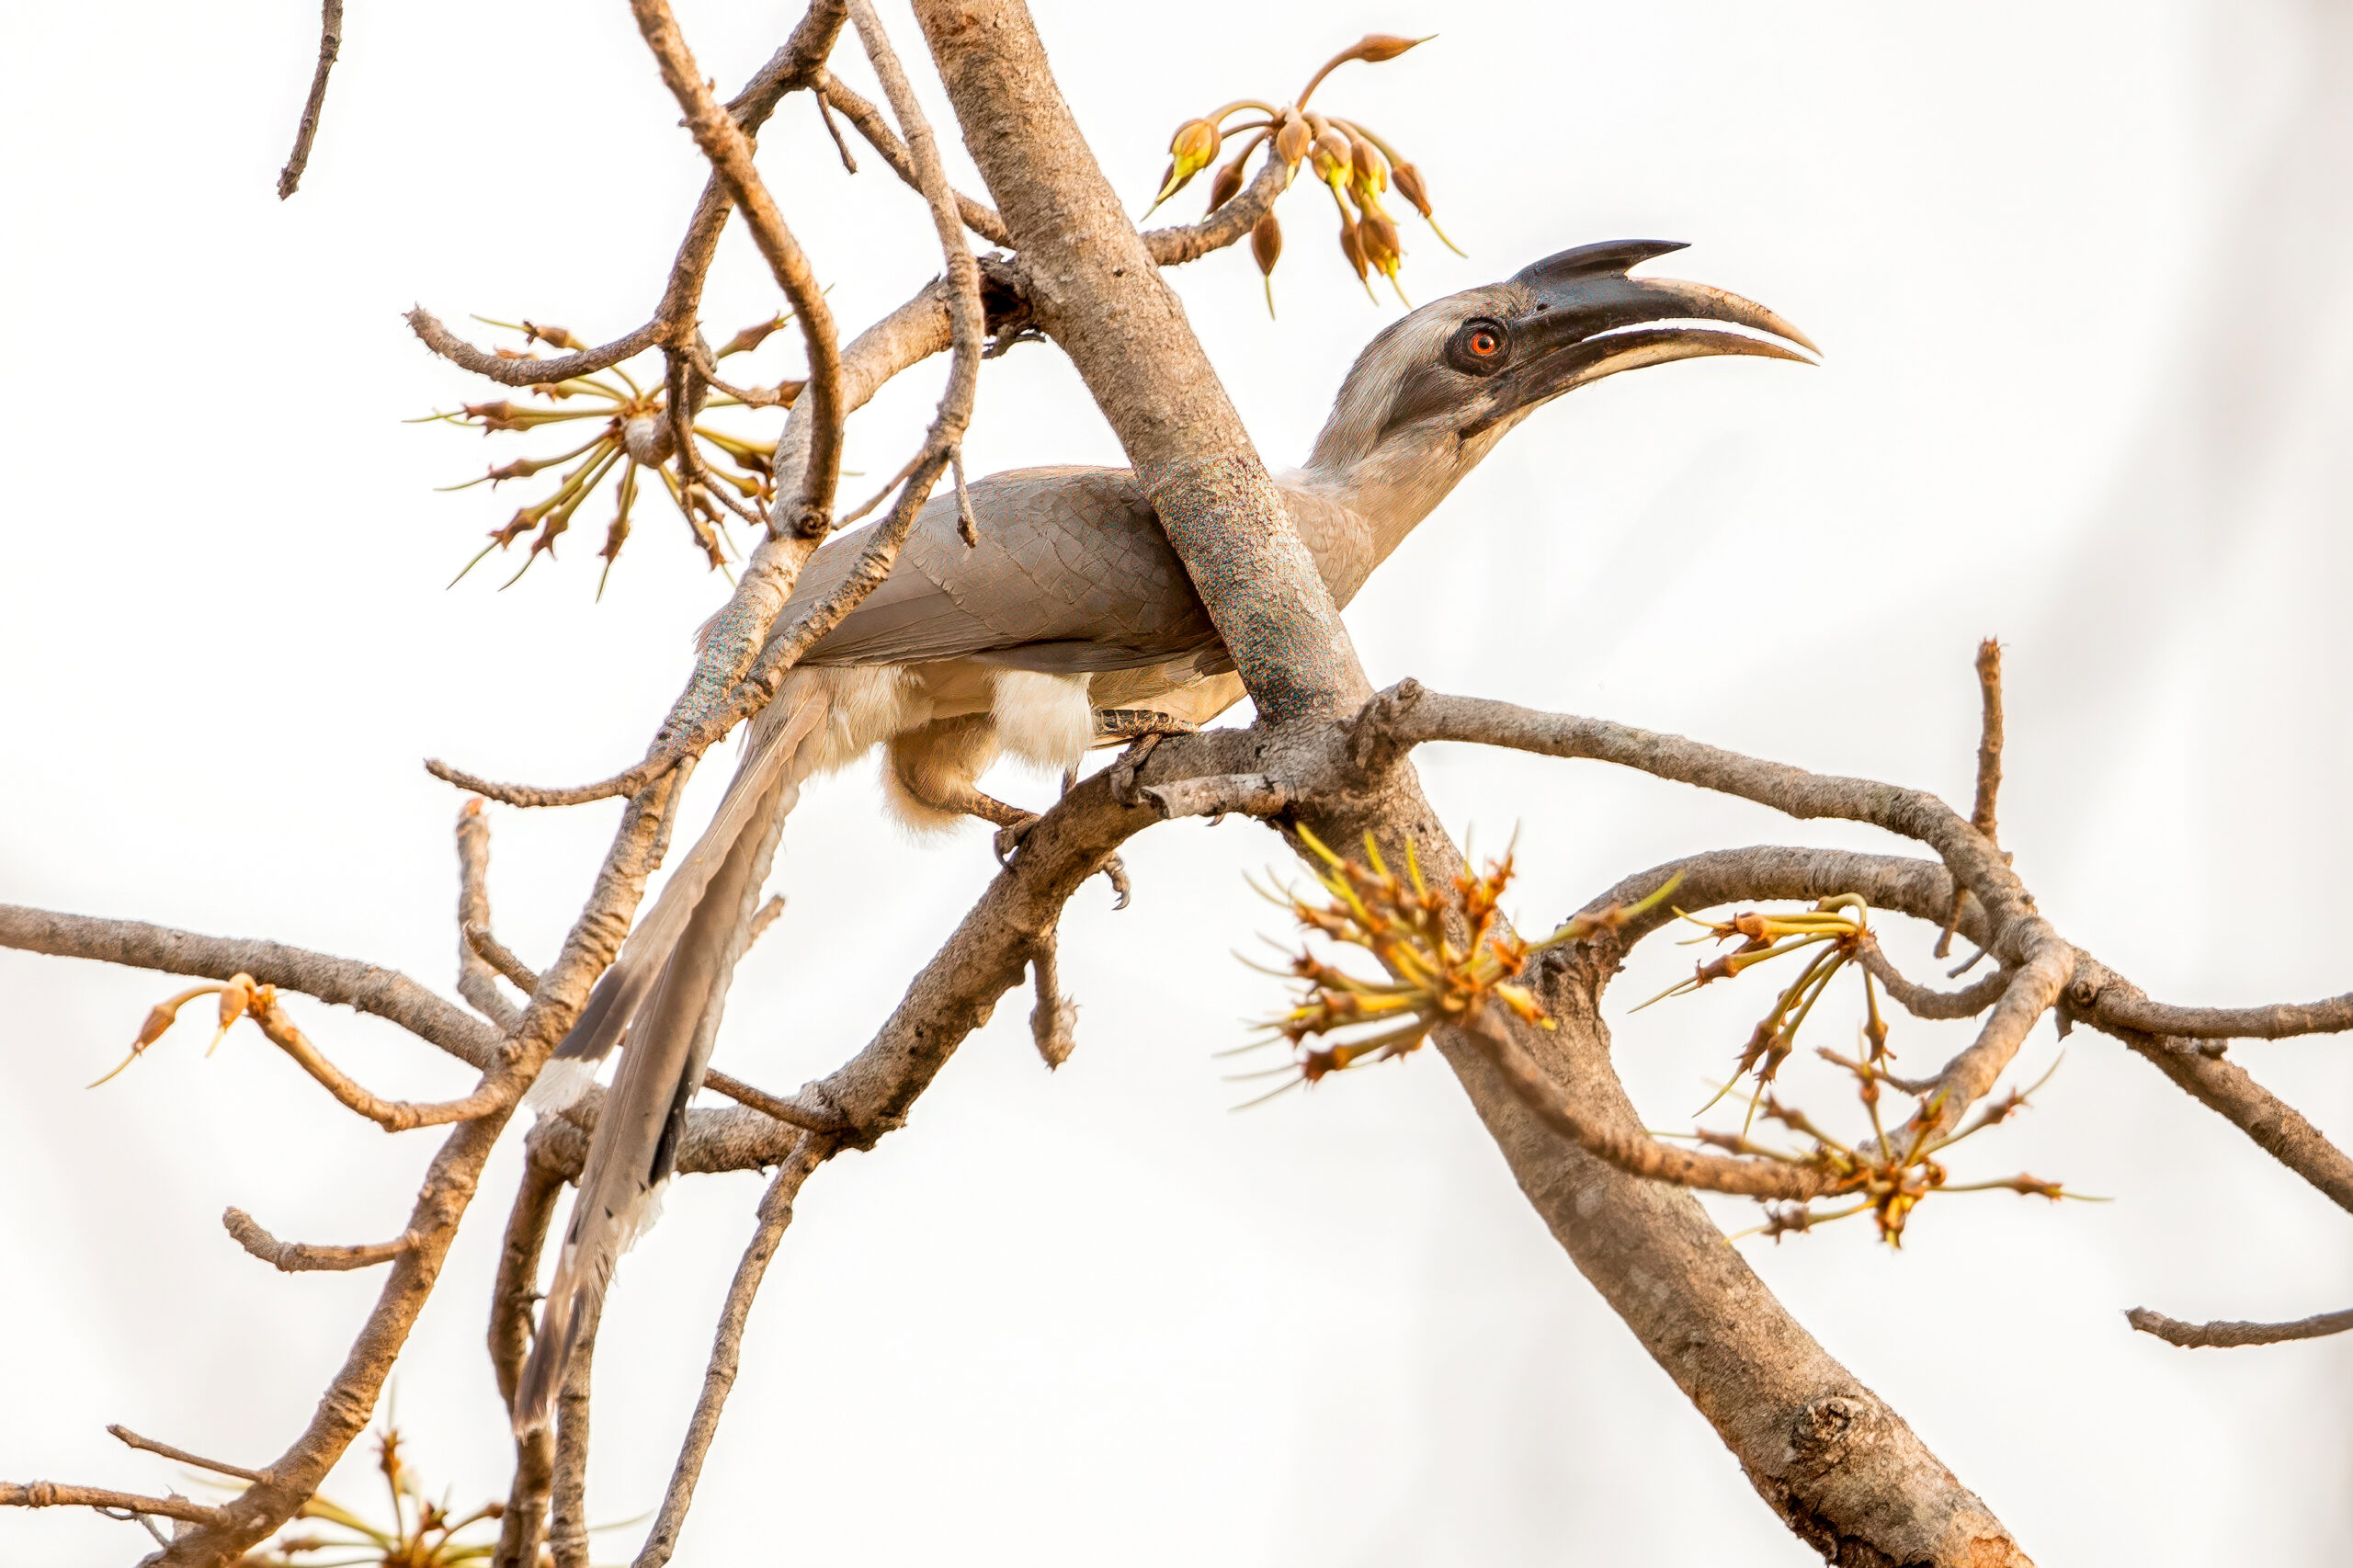 Indian Grey Hornbill (Ocyceros birostris) @ Satpura National Park, India. Photo: Håvard Rosenlund